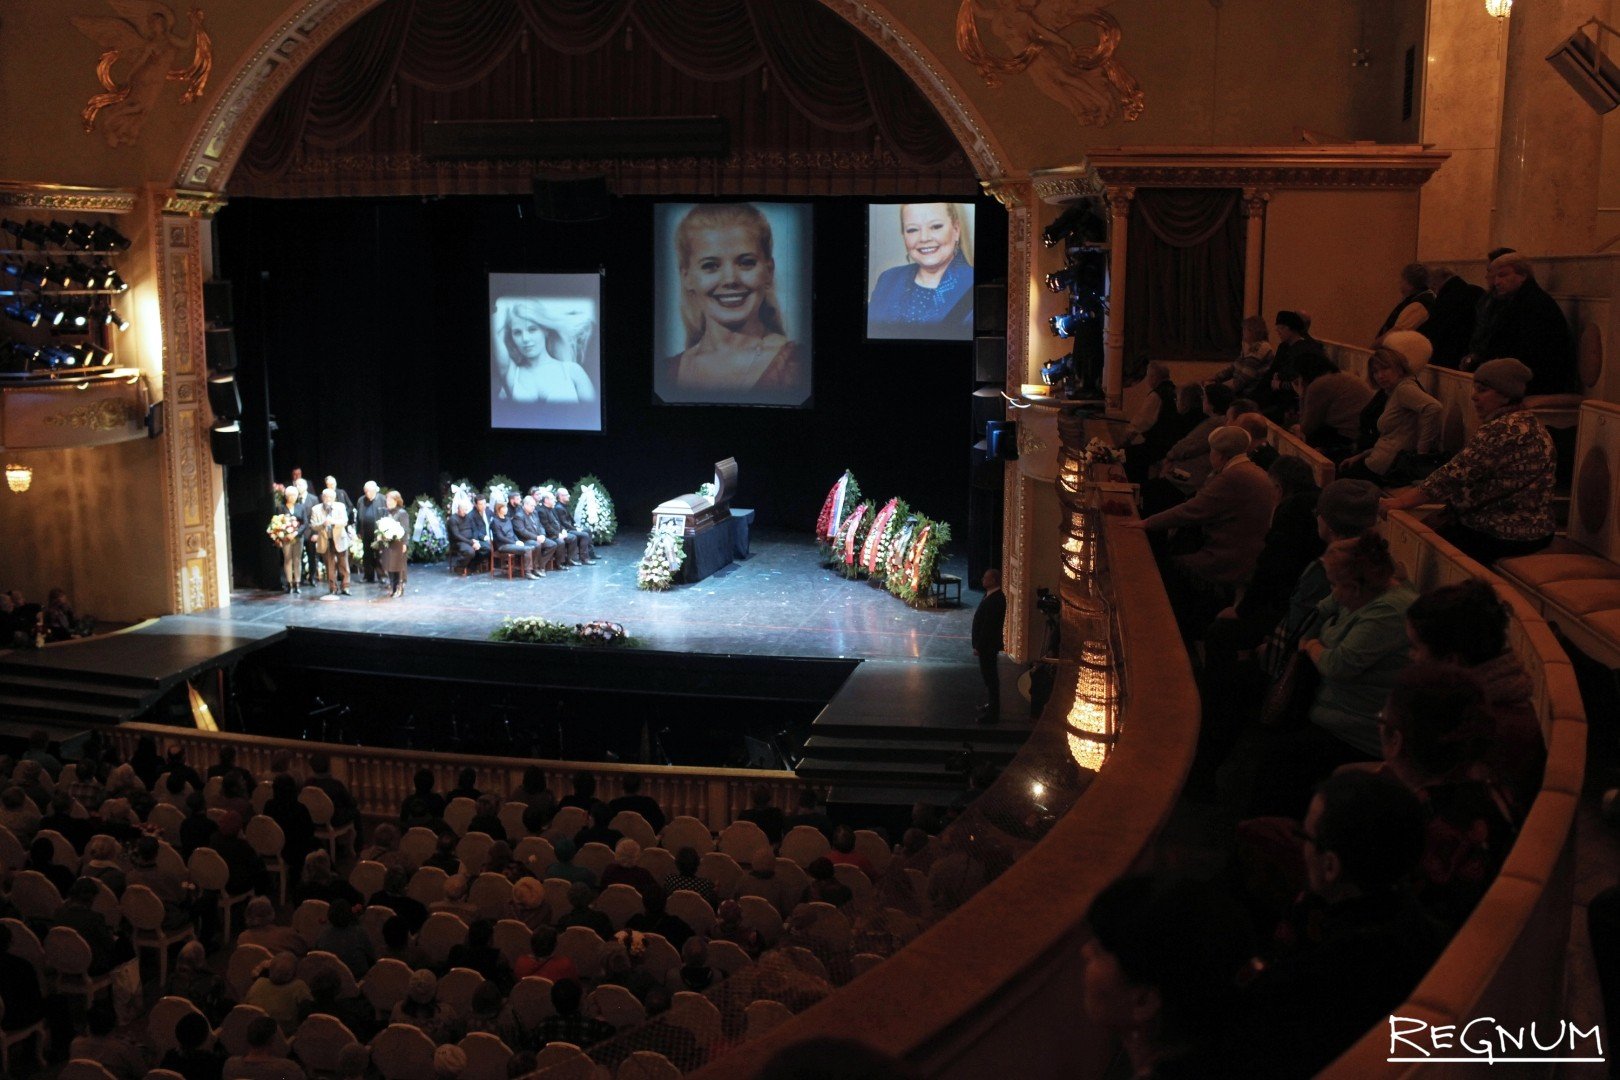 театр музыкальной комедии санкт петербург большой зал